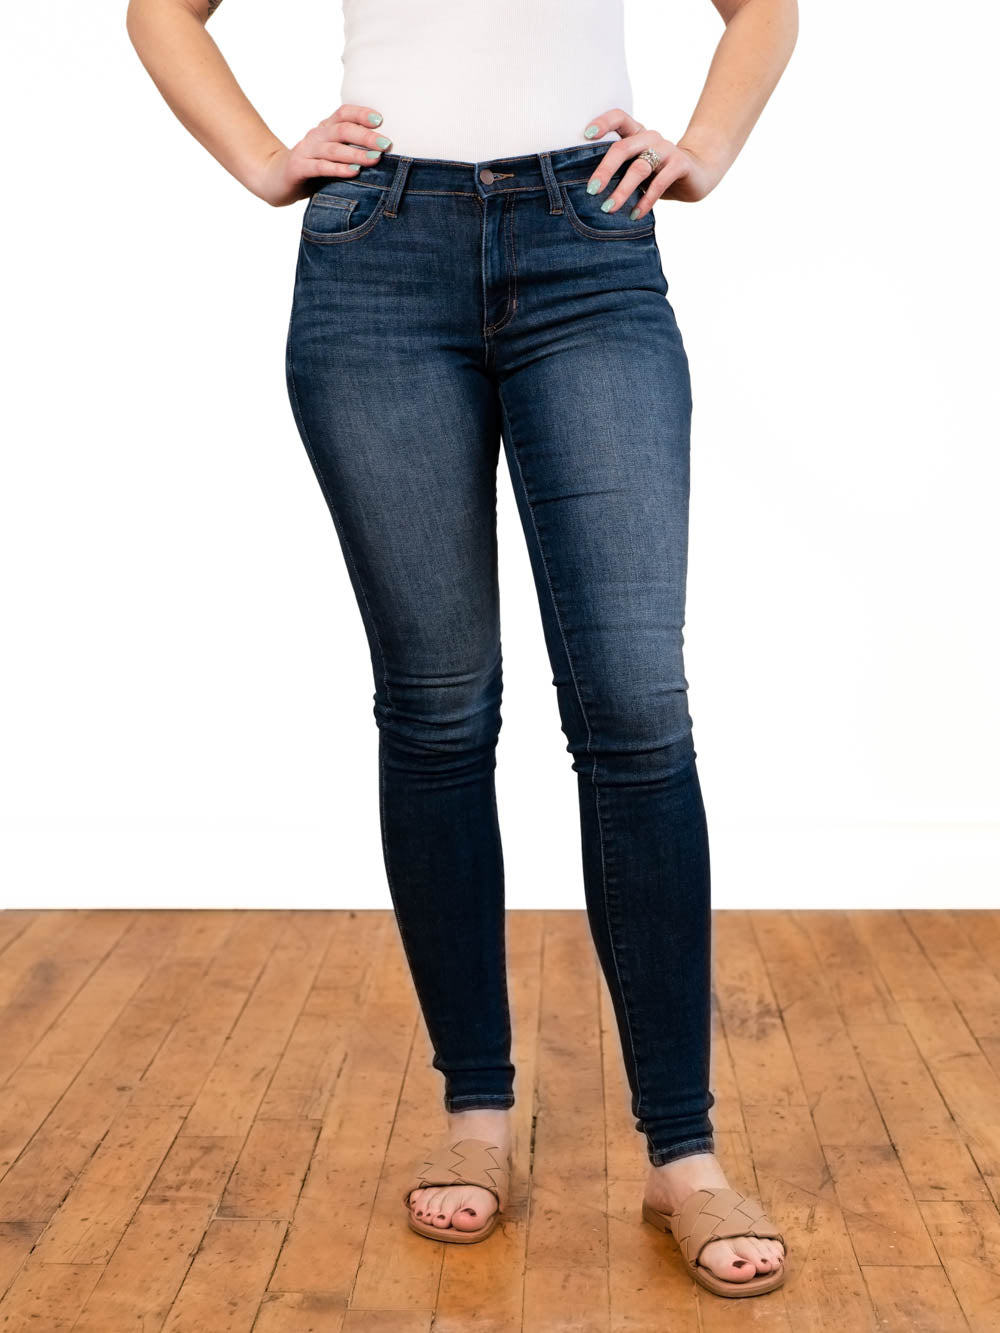 Best Skinny Jeans for Tall Women | Amalli Talli